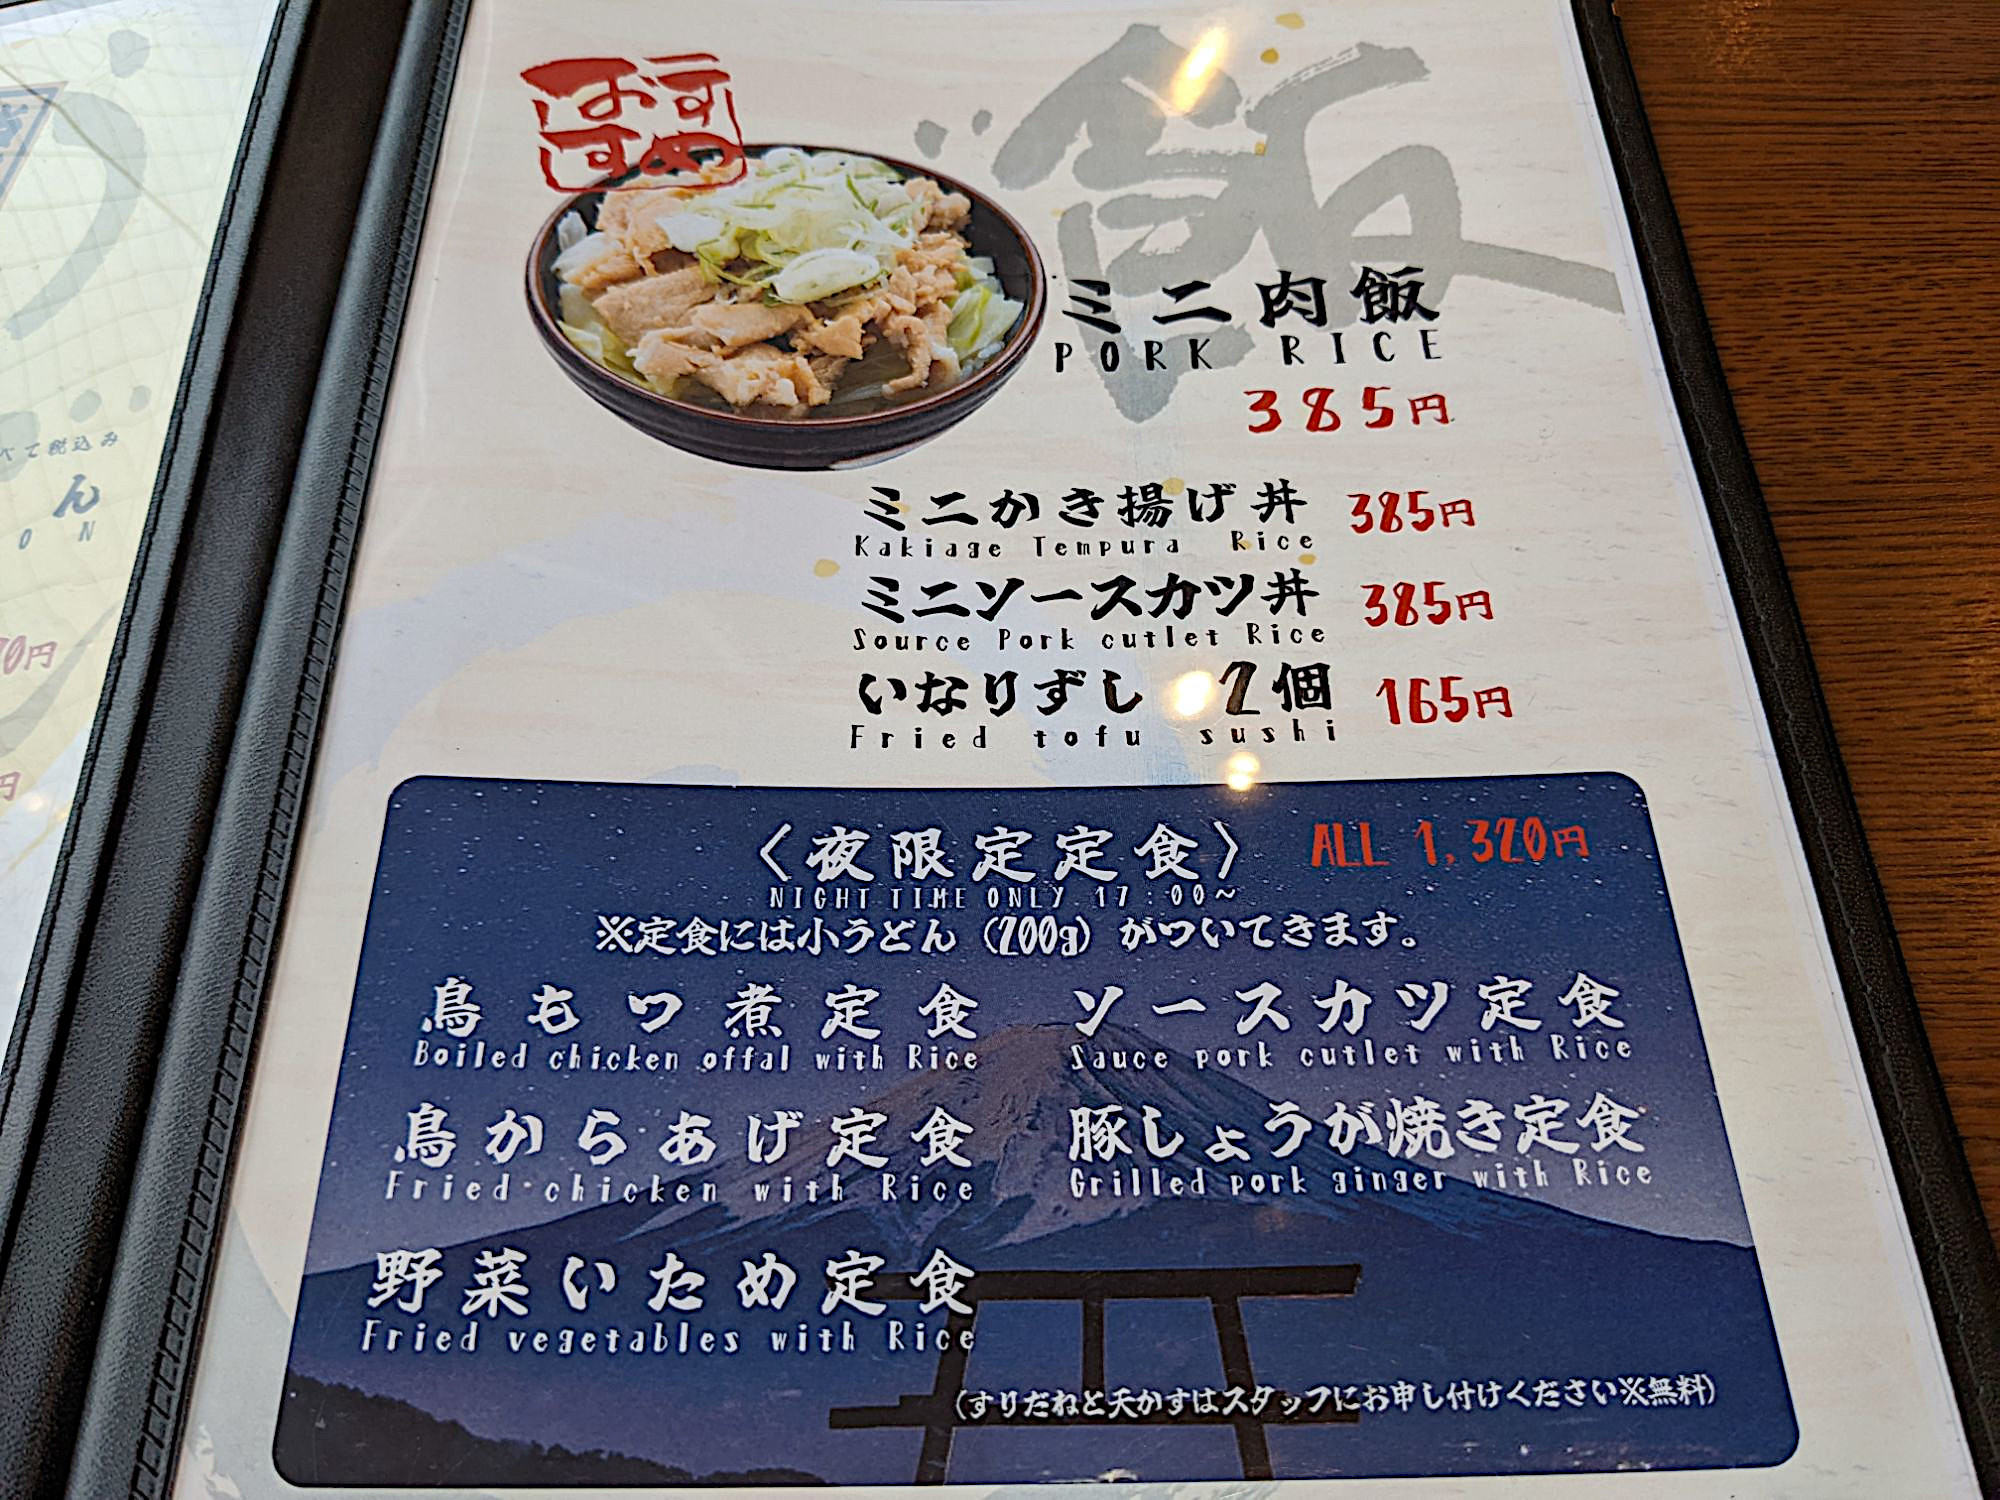 「麺’ズ冨士山 セレオ甲府店」のメニュー